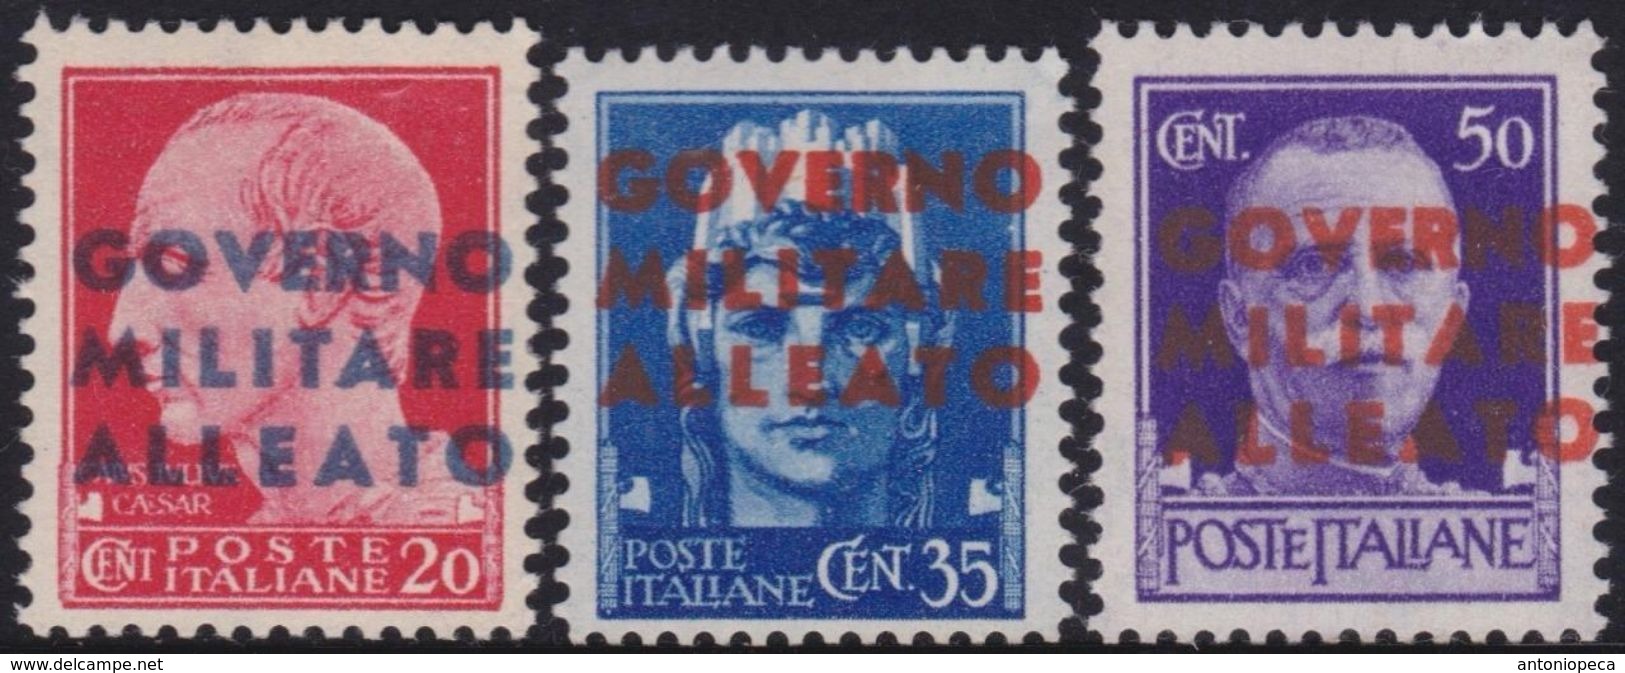 OCCUPAZIONE ALLEATA NAPOLI 1943 Serie Completa 3v​ Gomma Integra, MNH** - Occ. Anglo-américaine: Naples